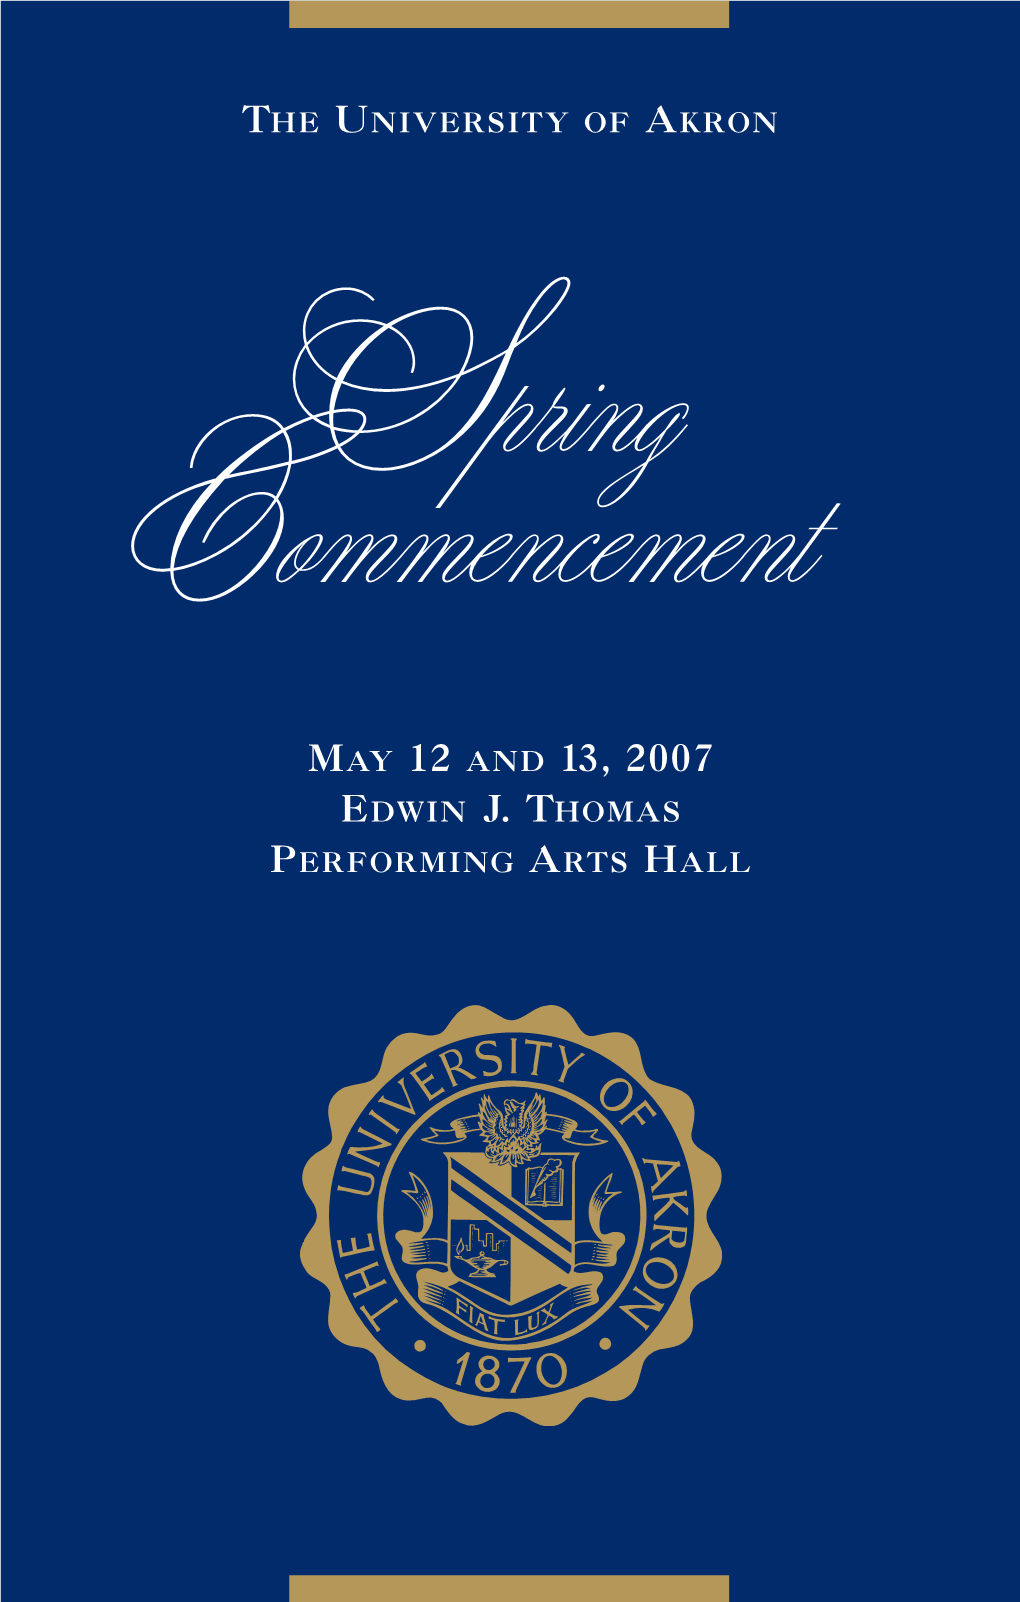 Spring 2007 Commencement Program